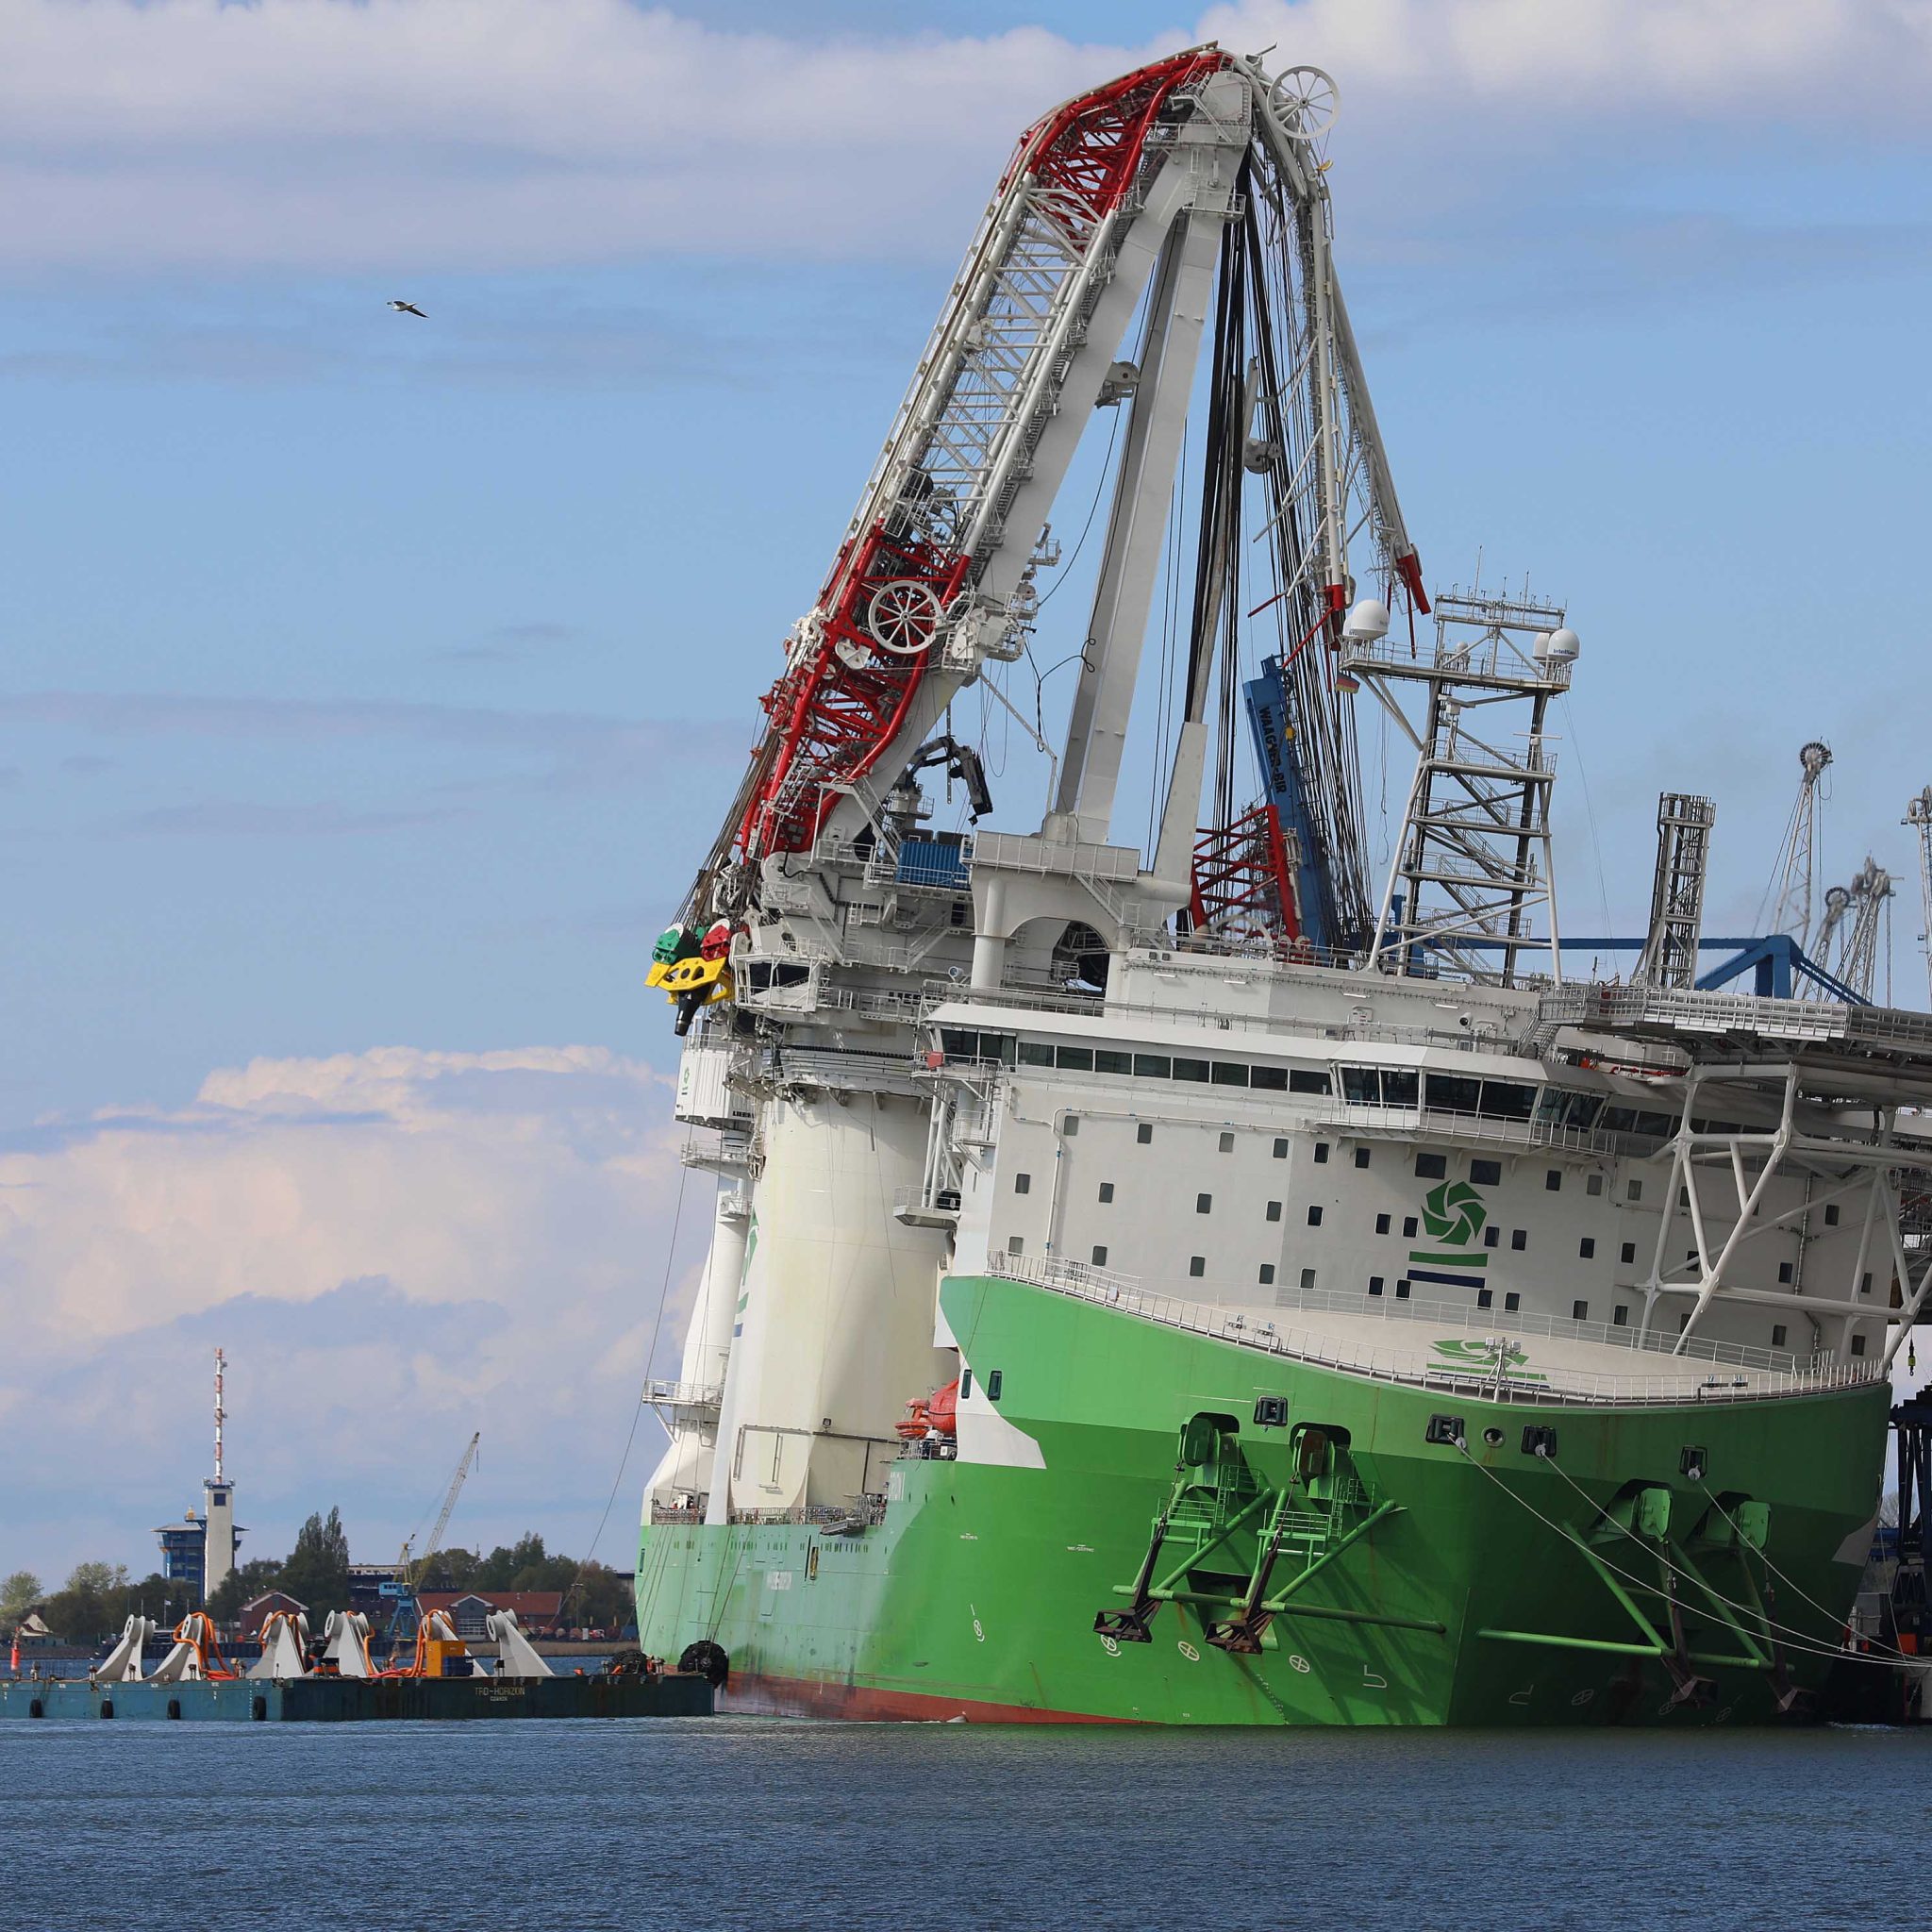 De nieuwe, afgebroken Liebherr scheepskraan op de Orion 1 in Rostock. Het offshore constructieschip van de Deme Group lag kort na het incident met slagzij tegen de kade. (Foto Stefan Tretropp)